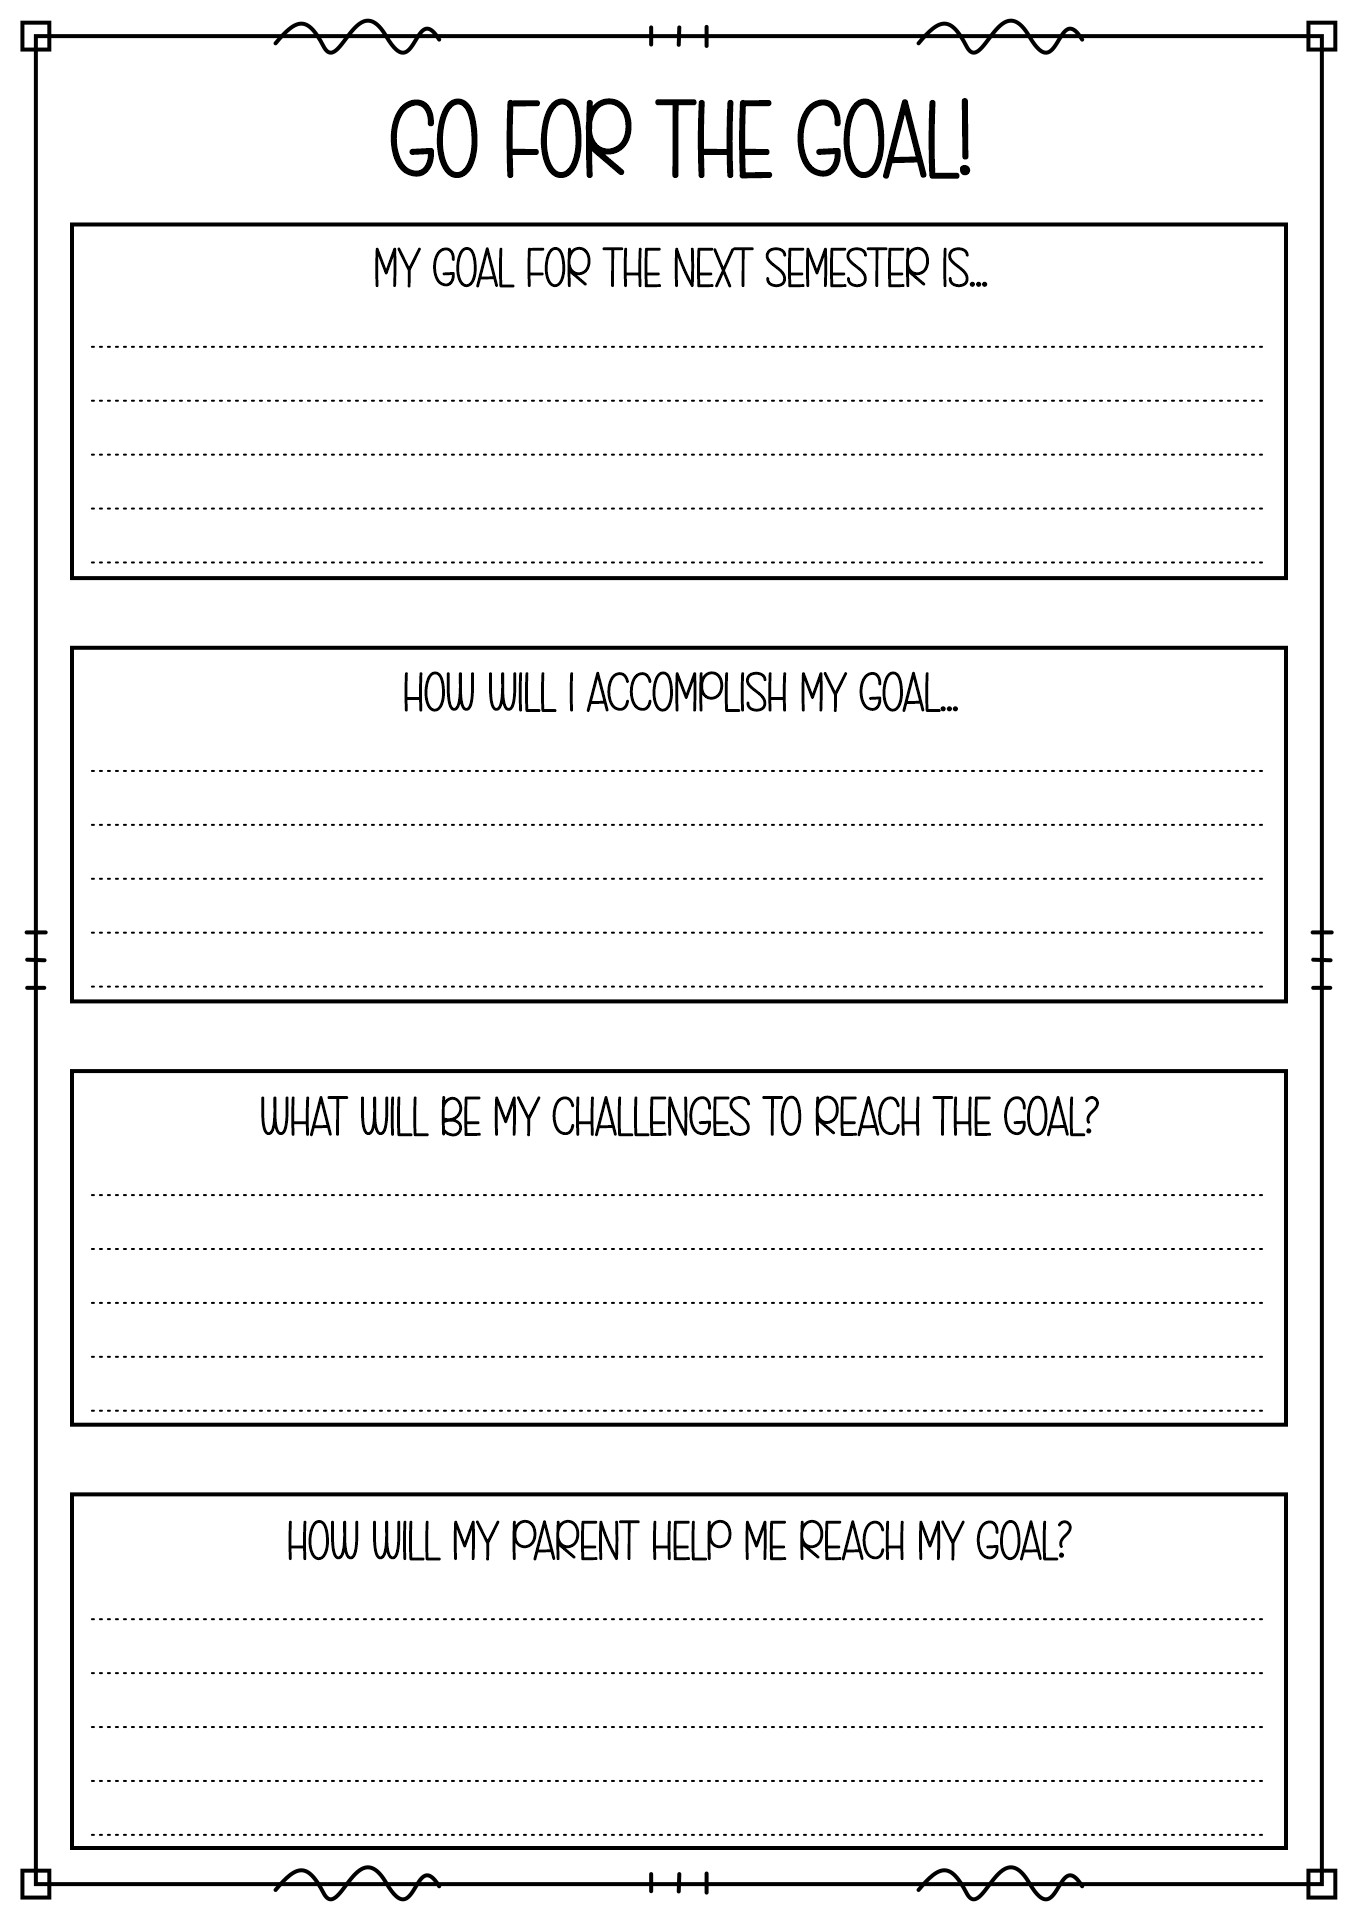 Student Goals Worksheet Image